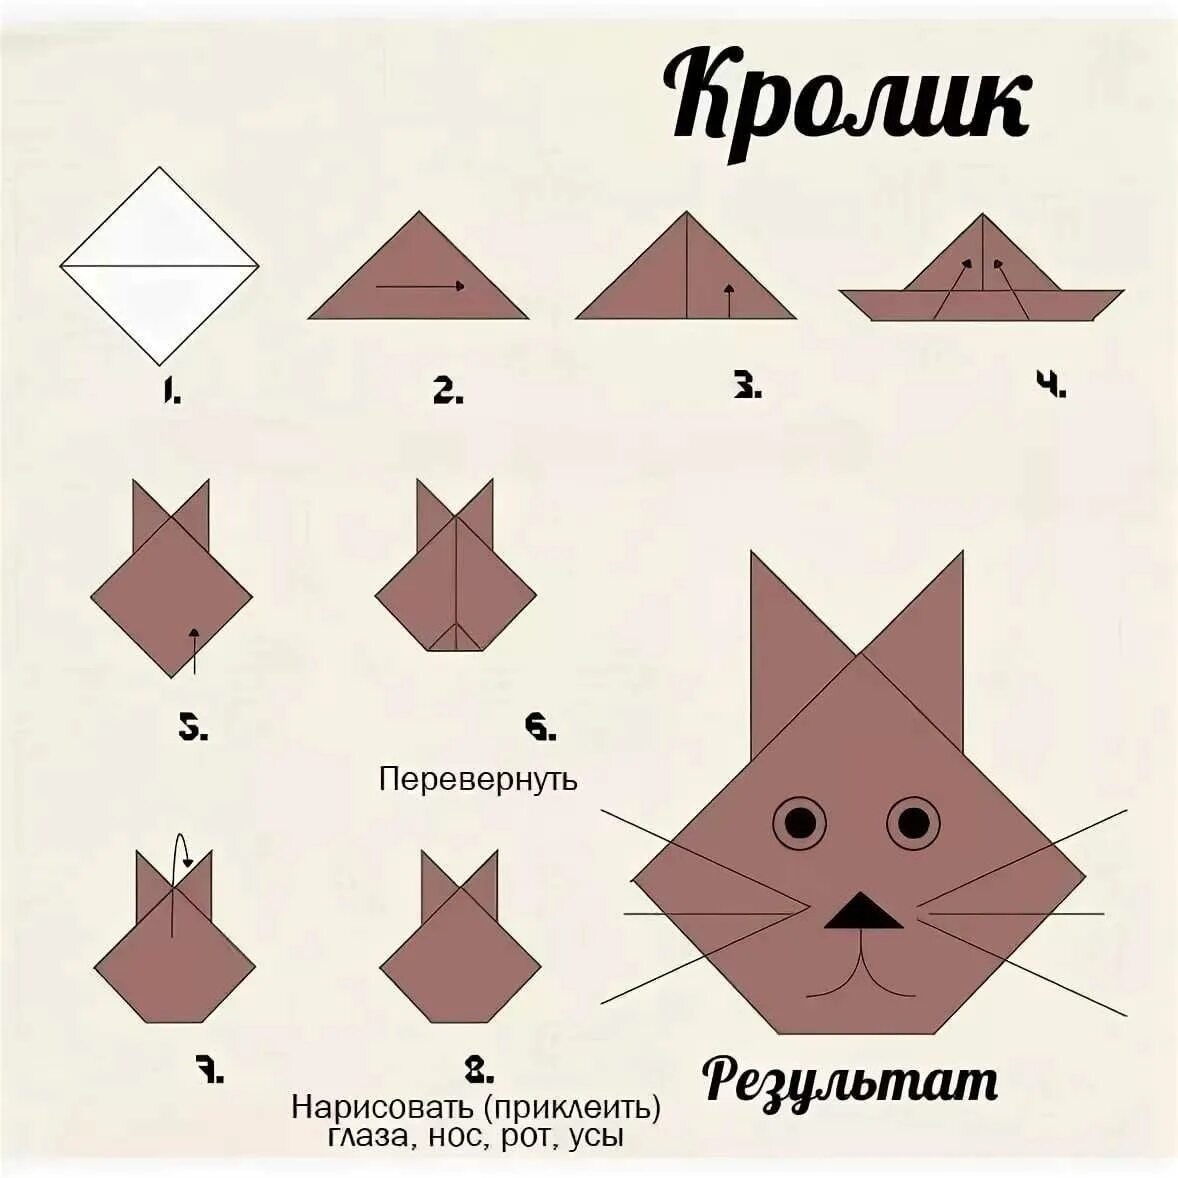 Уроки оригами 1. Оригами из бумаги пошагово легко. Оригами из бумаги для детей схемы пошагово. Заяц оригами из бумаги схемы для детей. Оригами простые схемы для детей начинающих из бумаги.